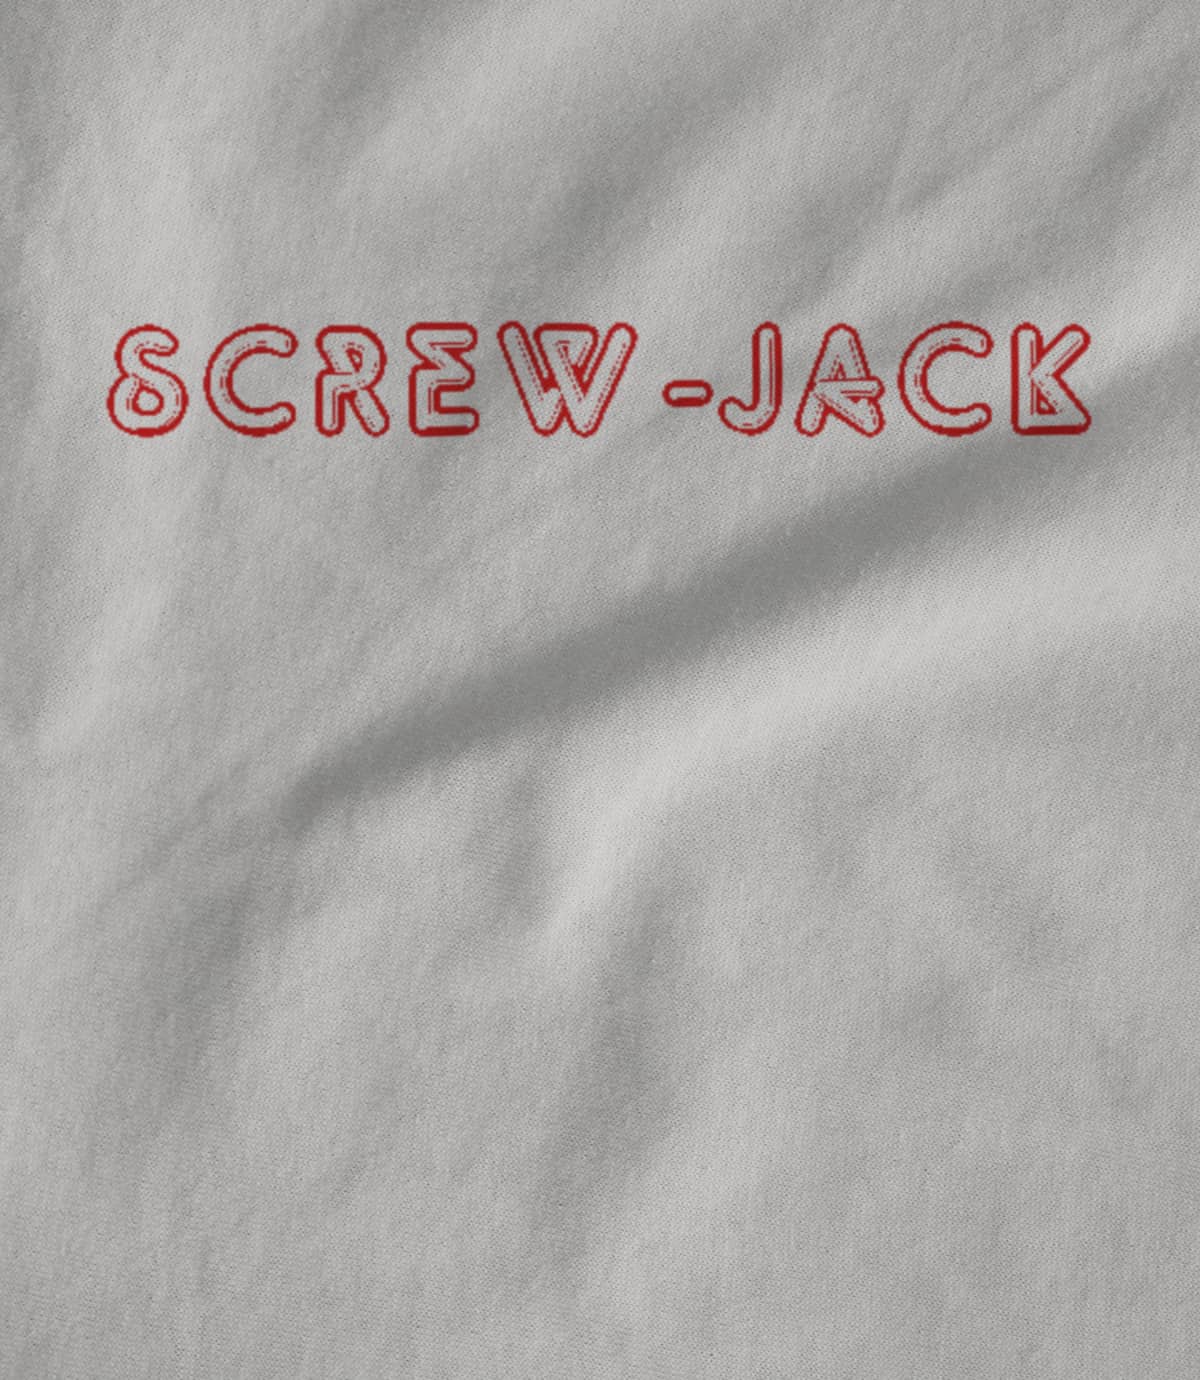 Screw-Jack